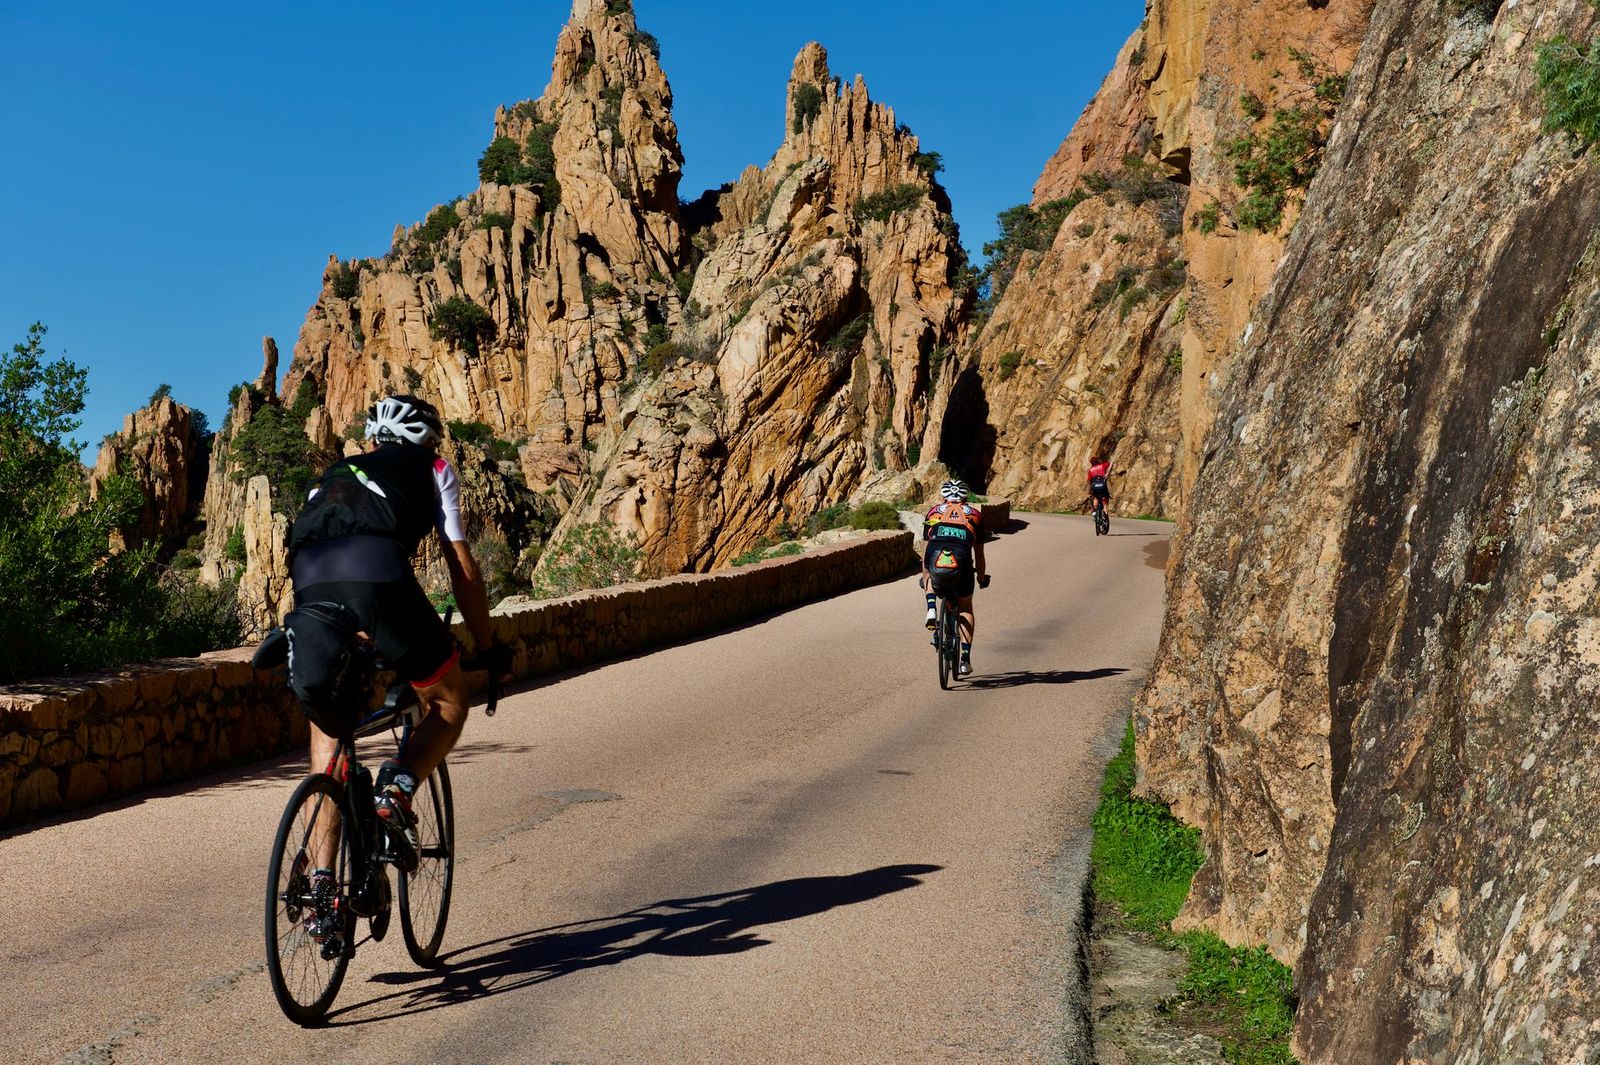 BikingMan Corsica : sous haute tension en plein couvre-feu et confinement